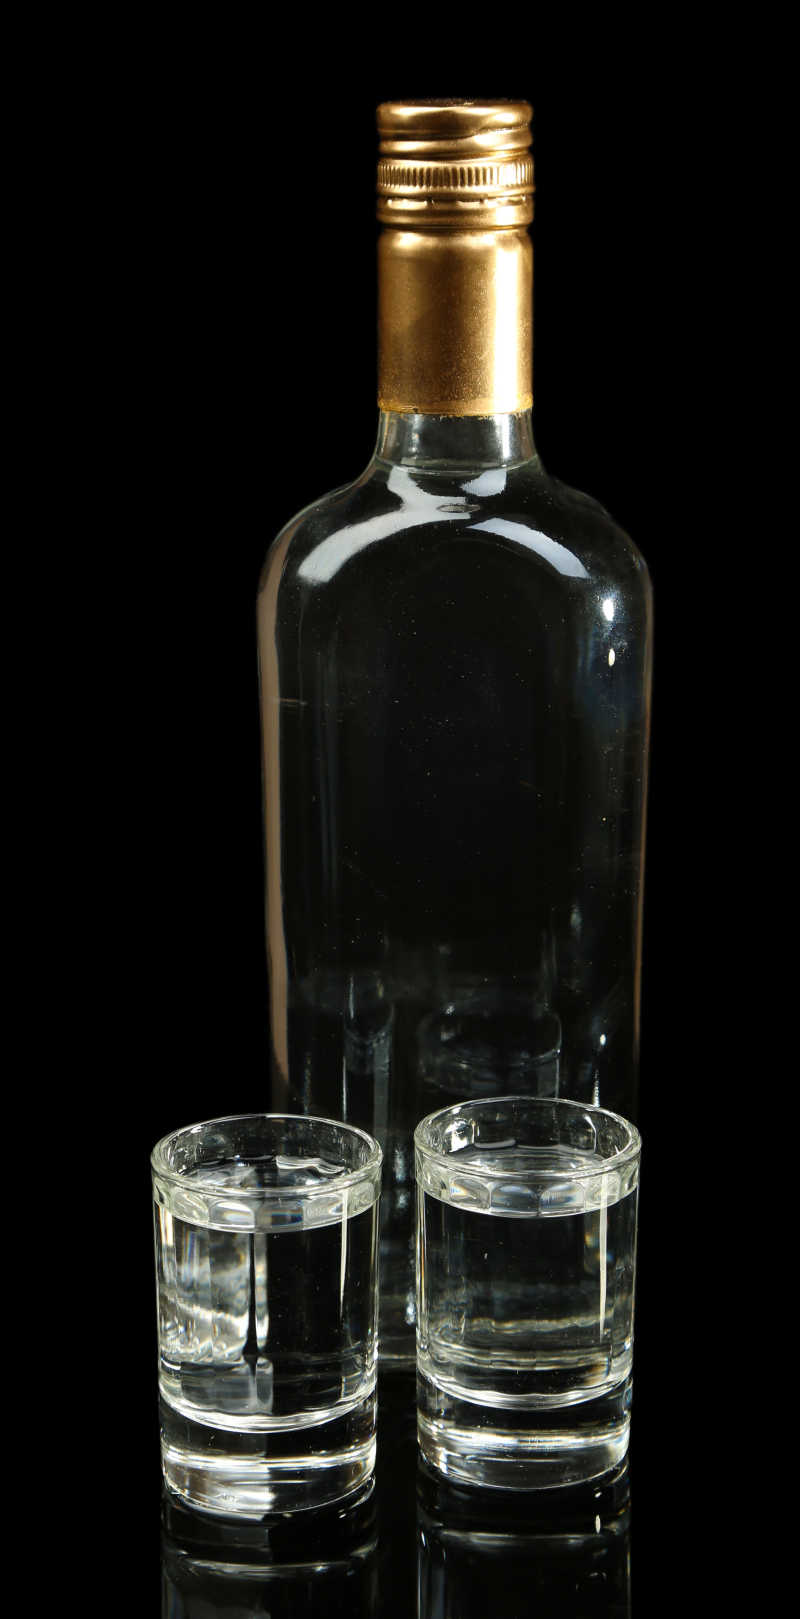 黑色背景下的一瓶伏特加和玻璃杯